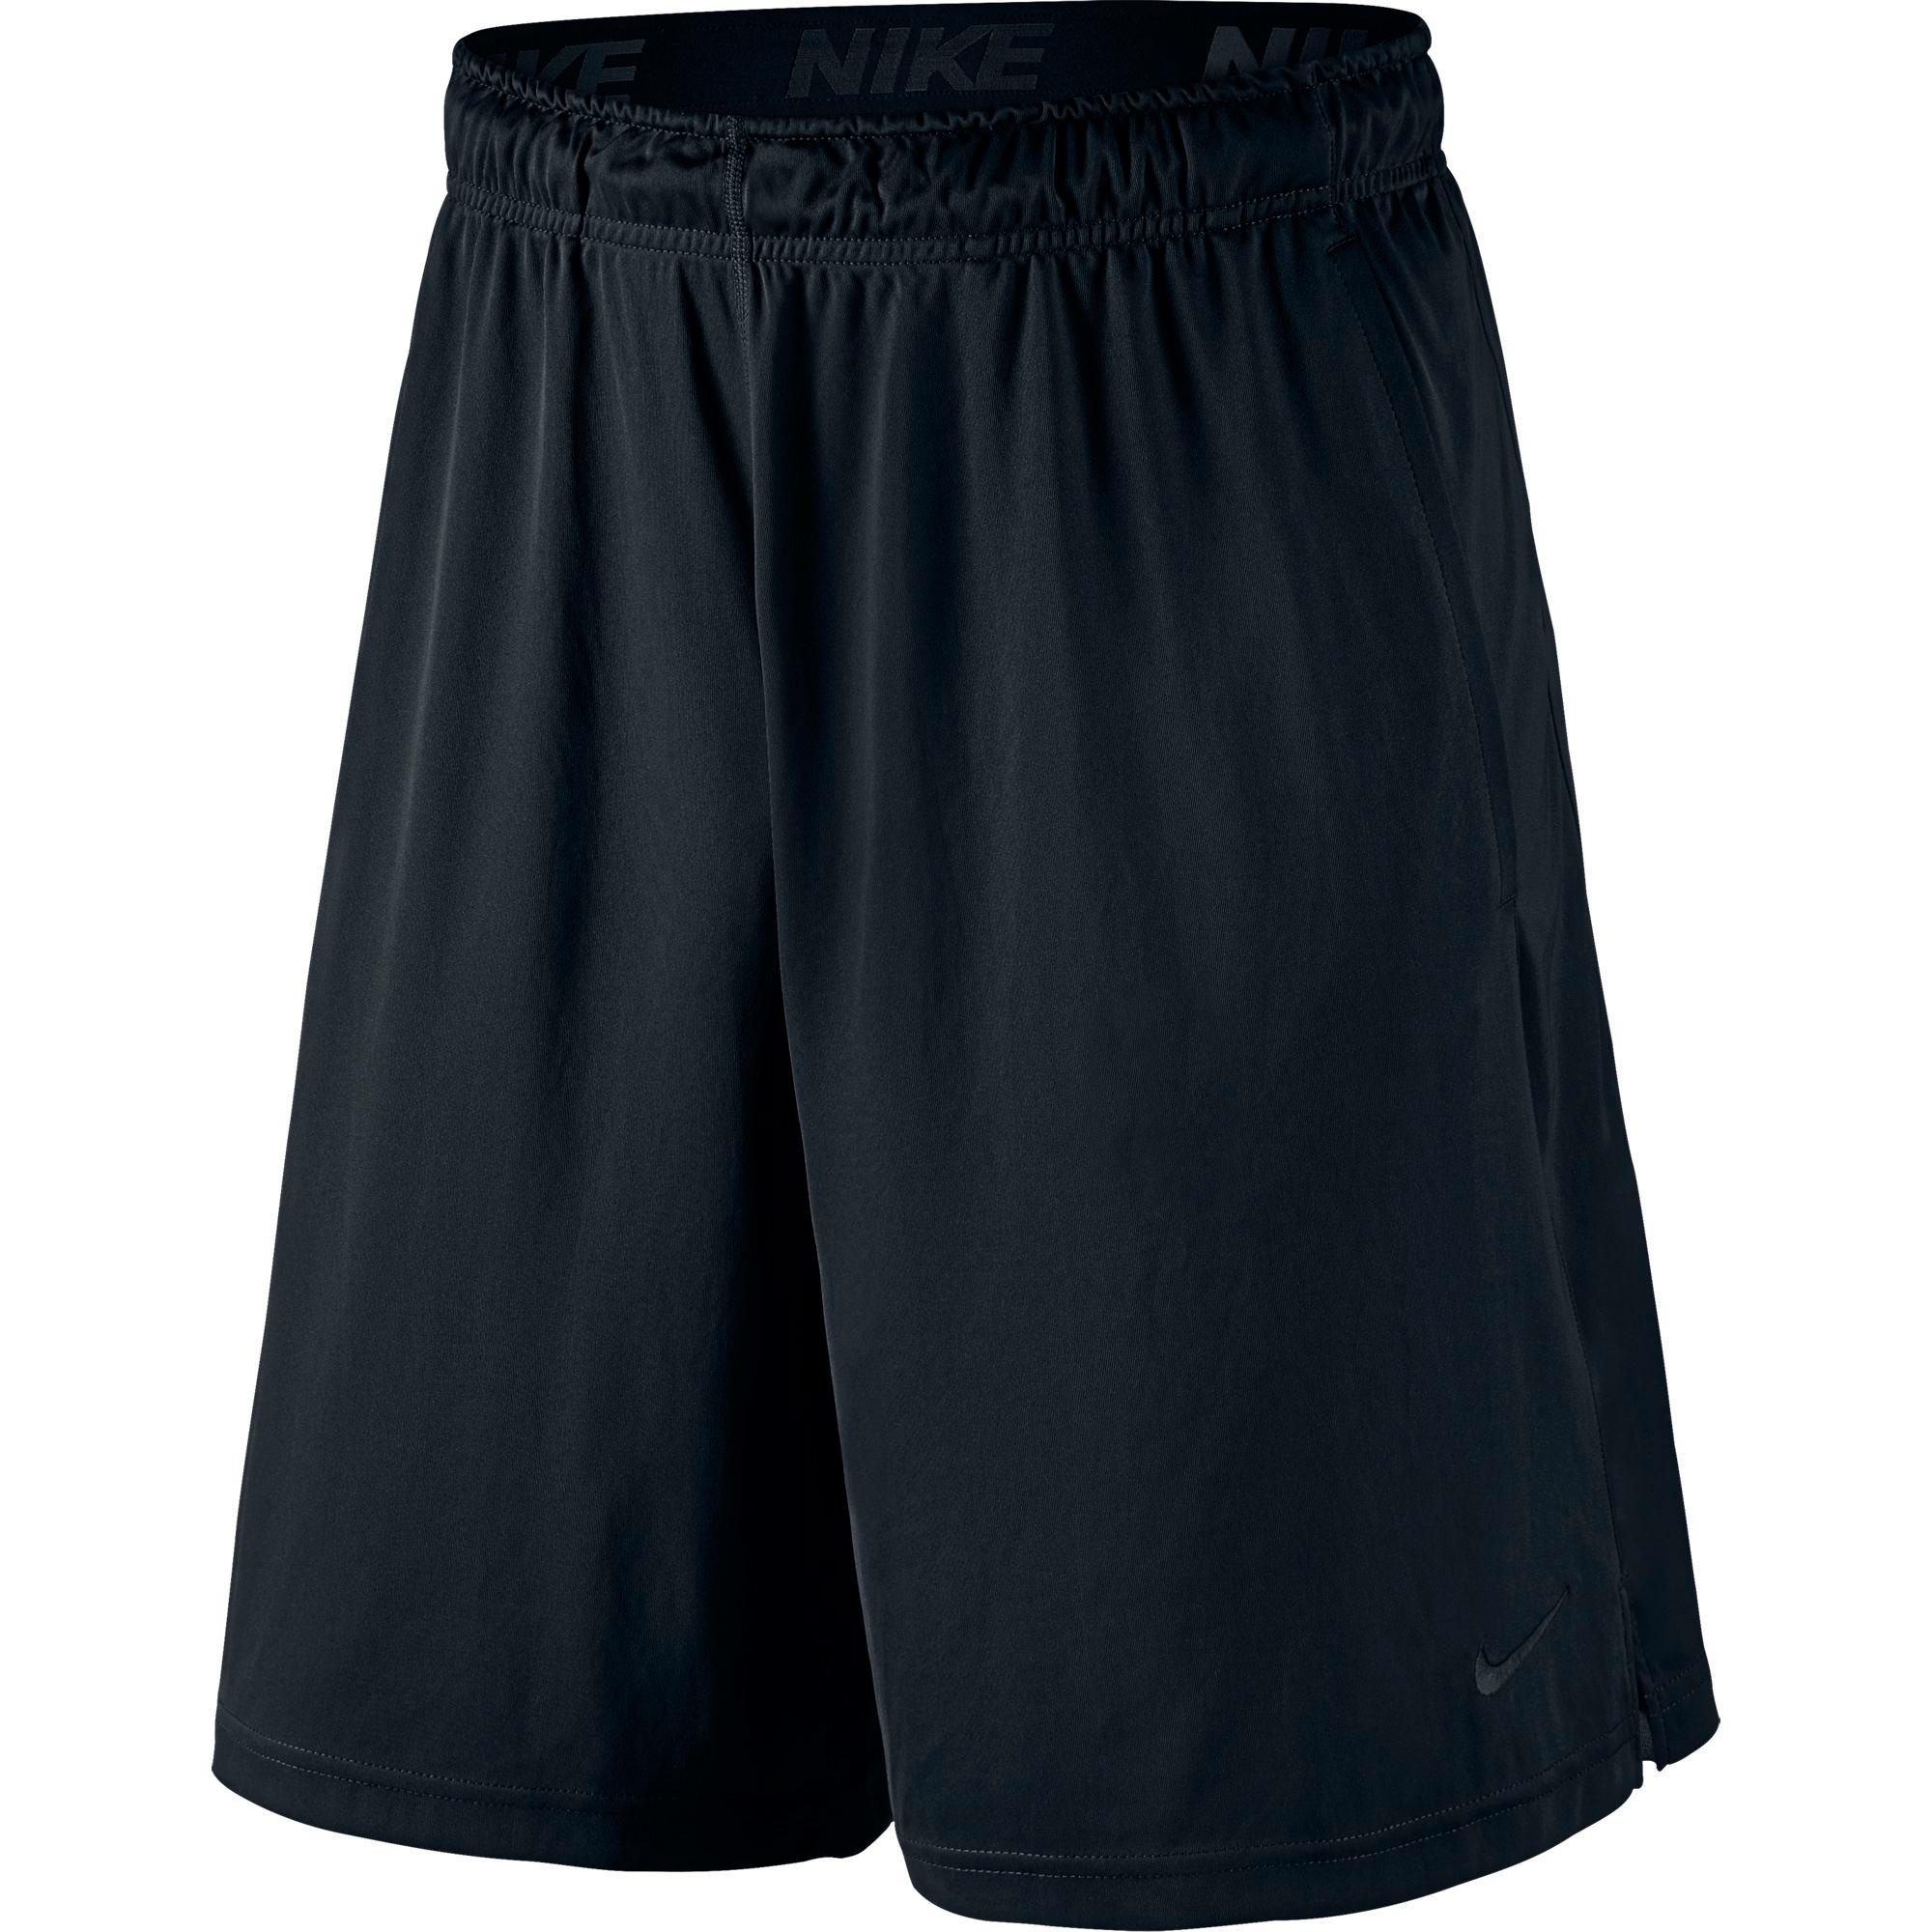 Nike Mens Dry Training Shorts - Black - Tennisnuts.com